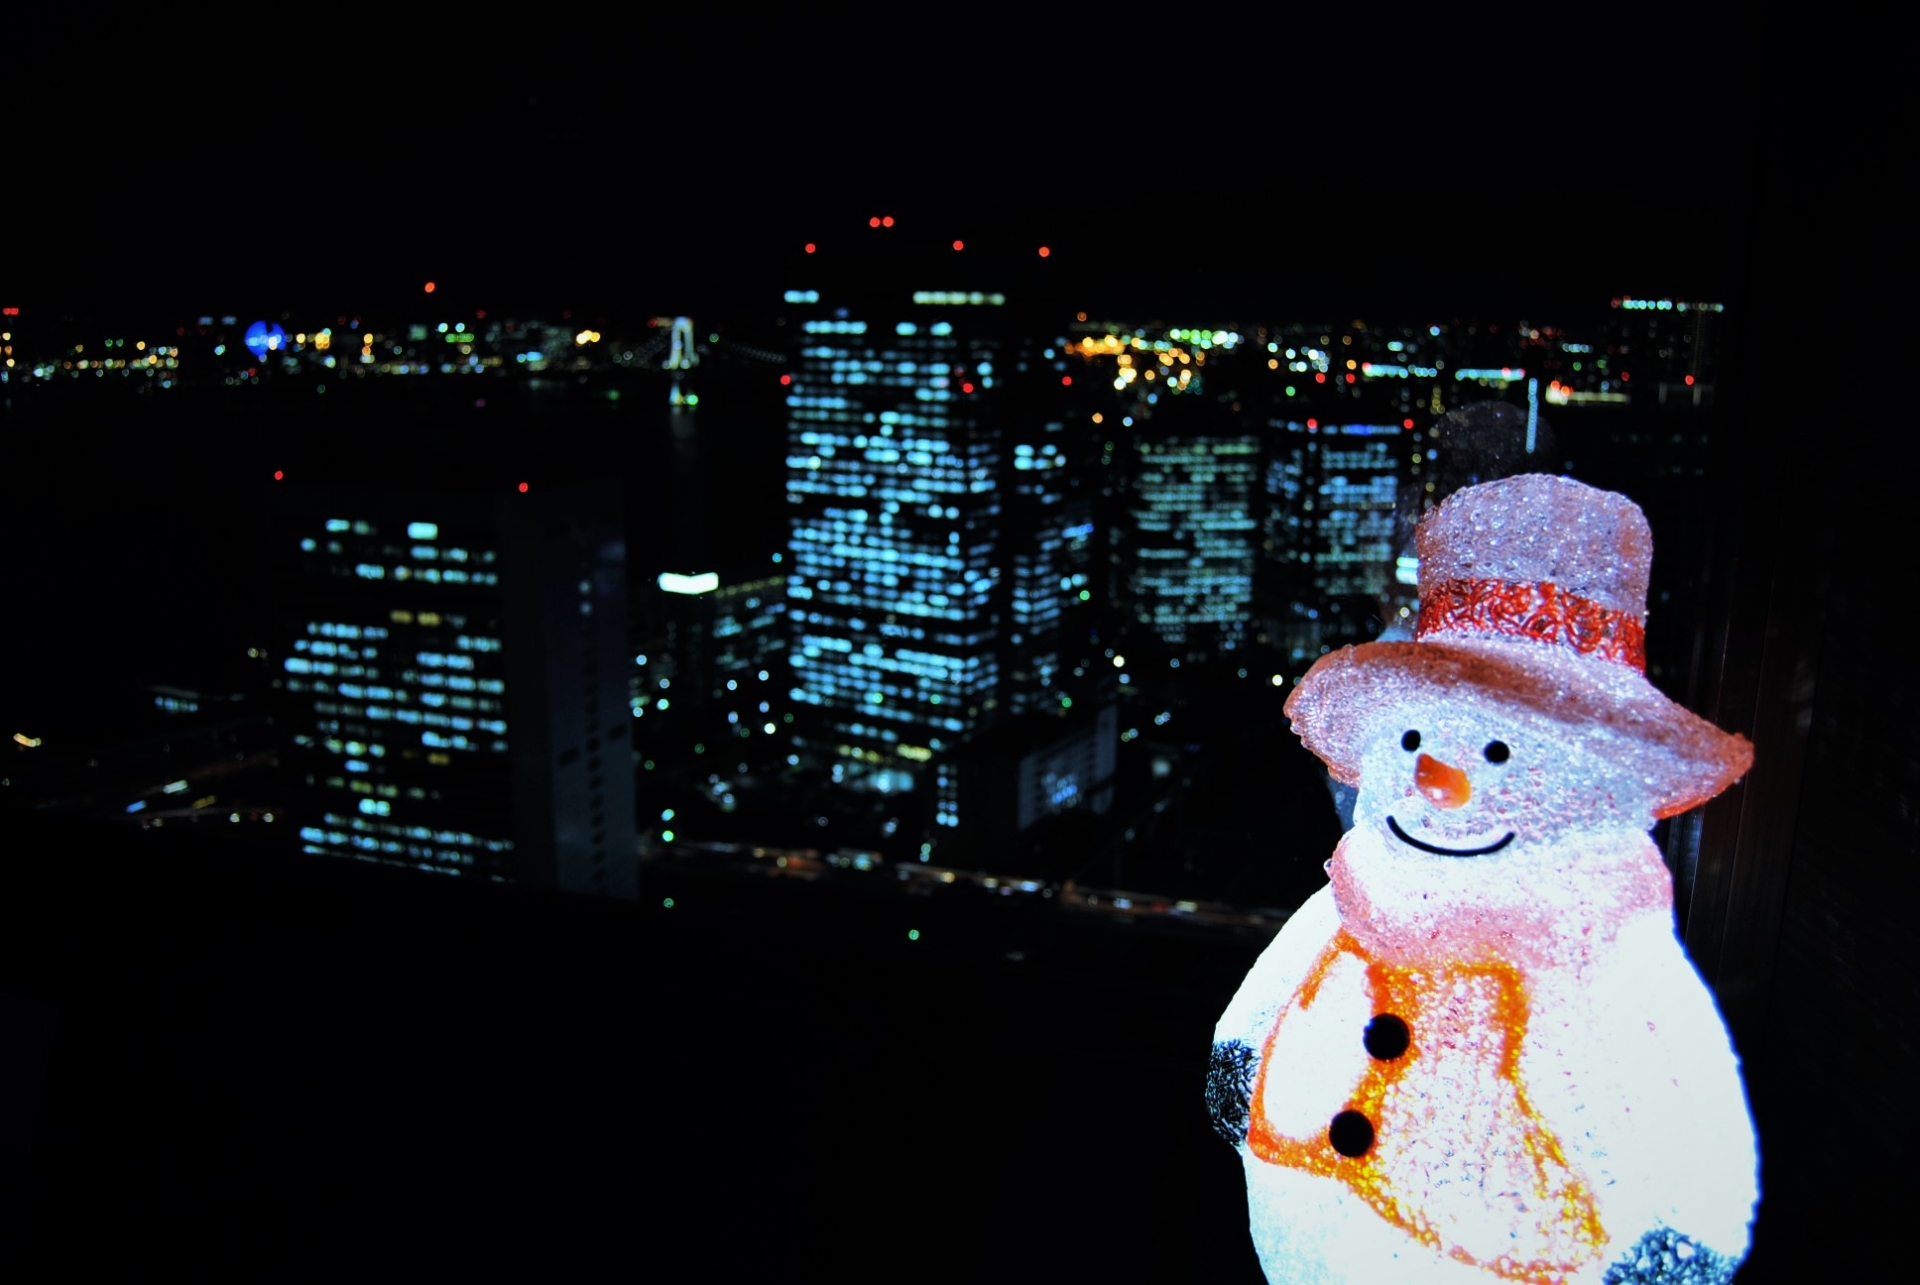 illuminations, snowman, Christmas